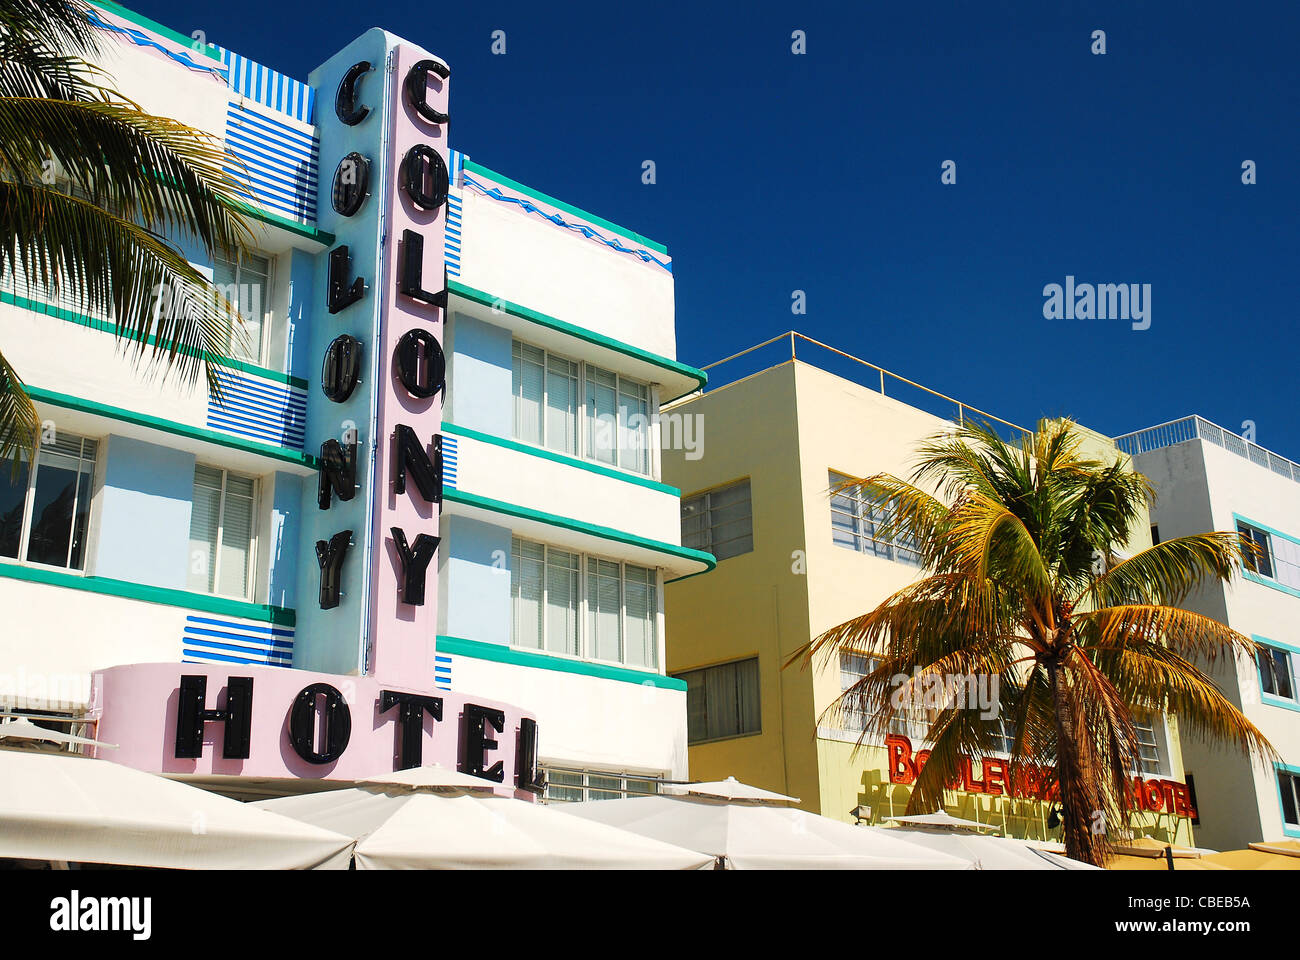 Das Colony Hotel ist ein Symbol für die Art-Deco-Wiederbelebung in South Beach, Miami geworden. Stockfoto